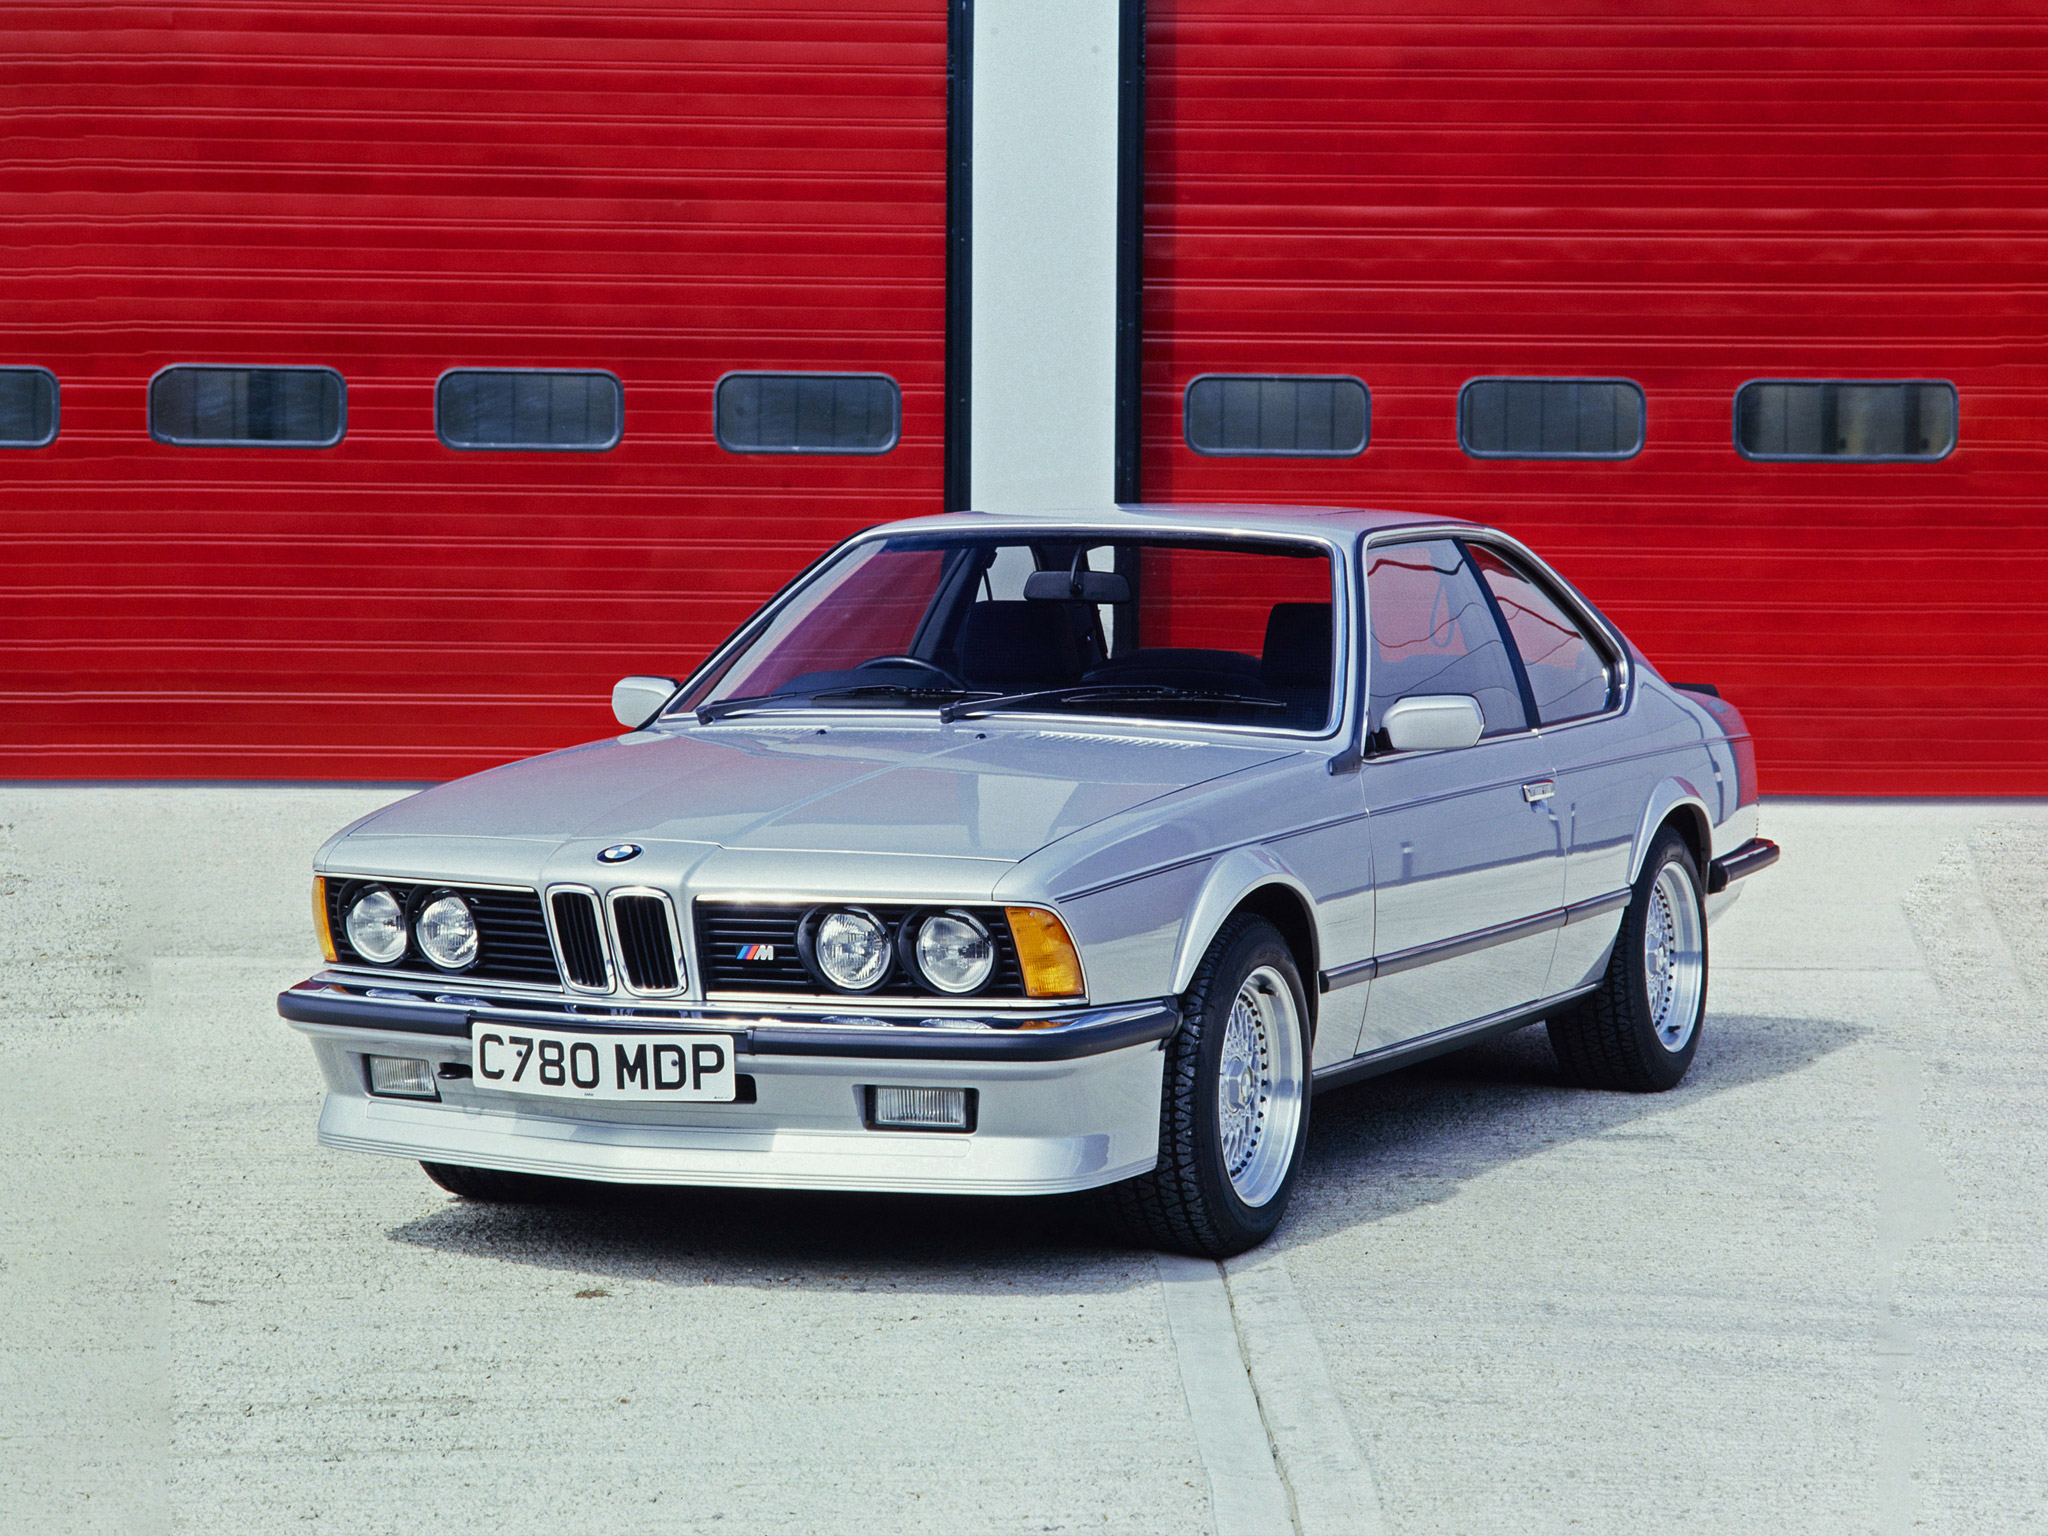  1987 BMW M635 CSi Wallpaper.